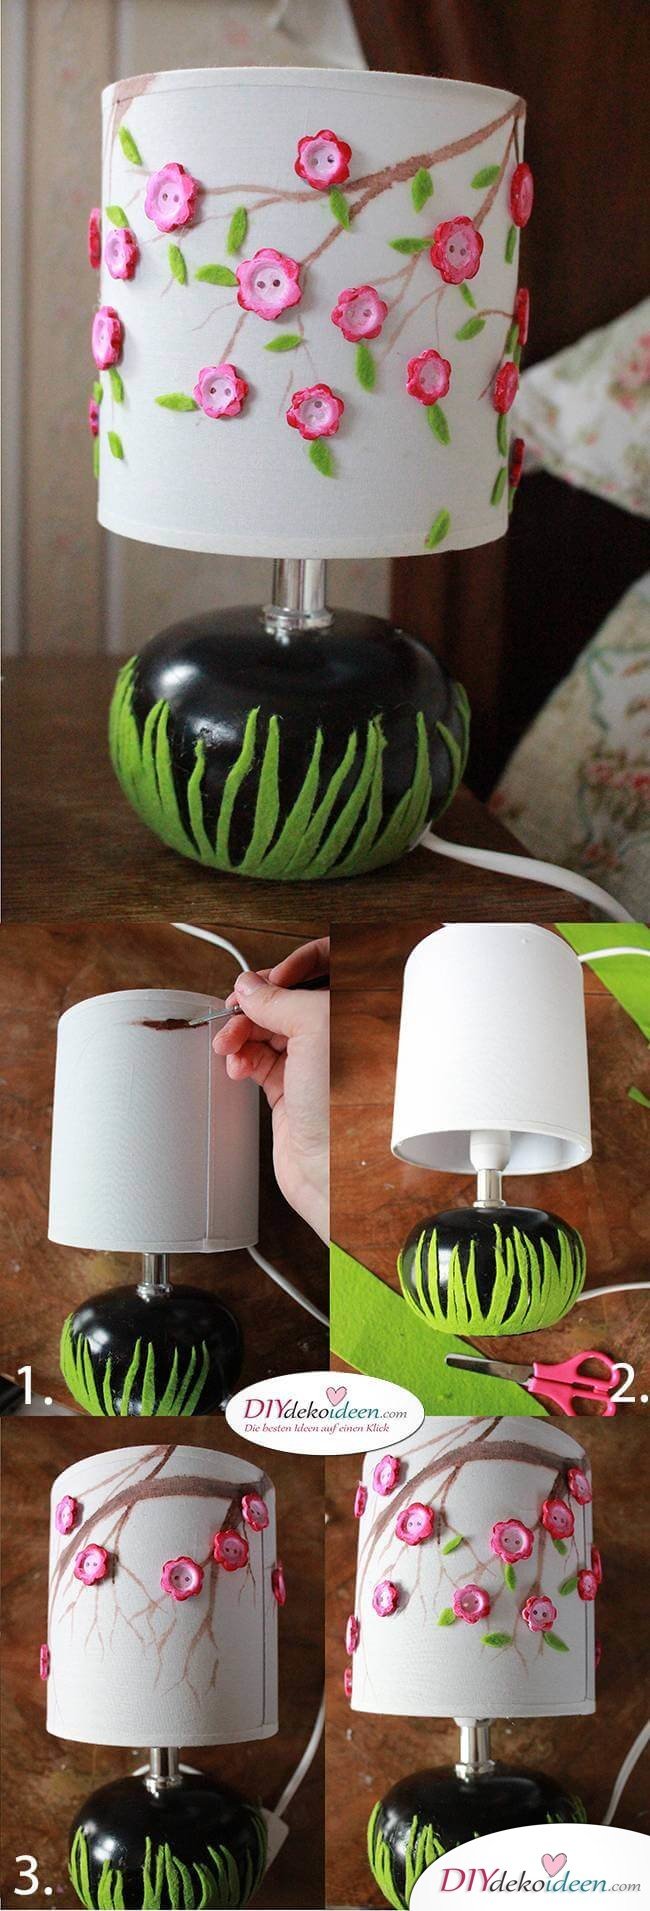 Kreative DIY Frühjahrsdekoideen – Lampe selbst gestalten 